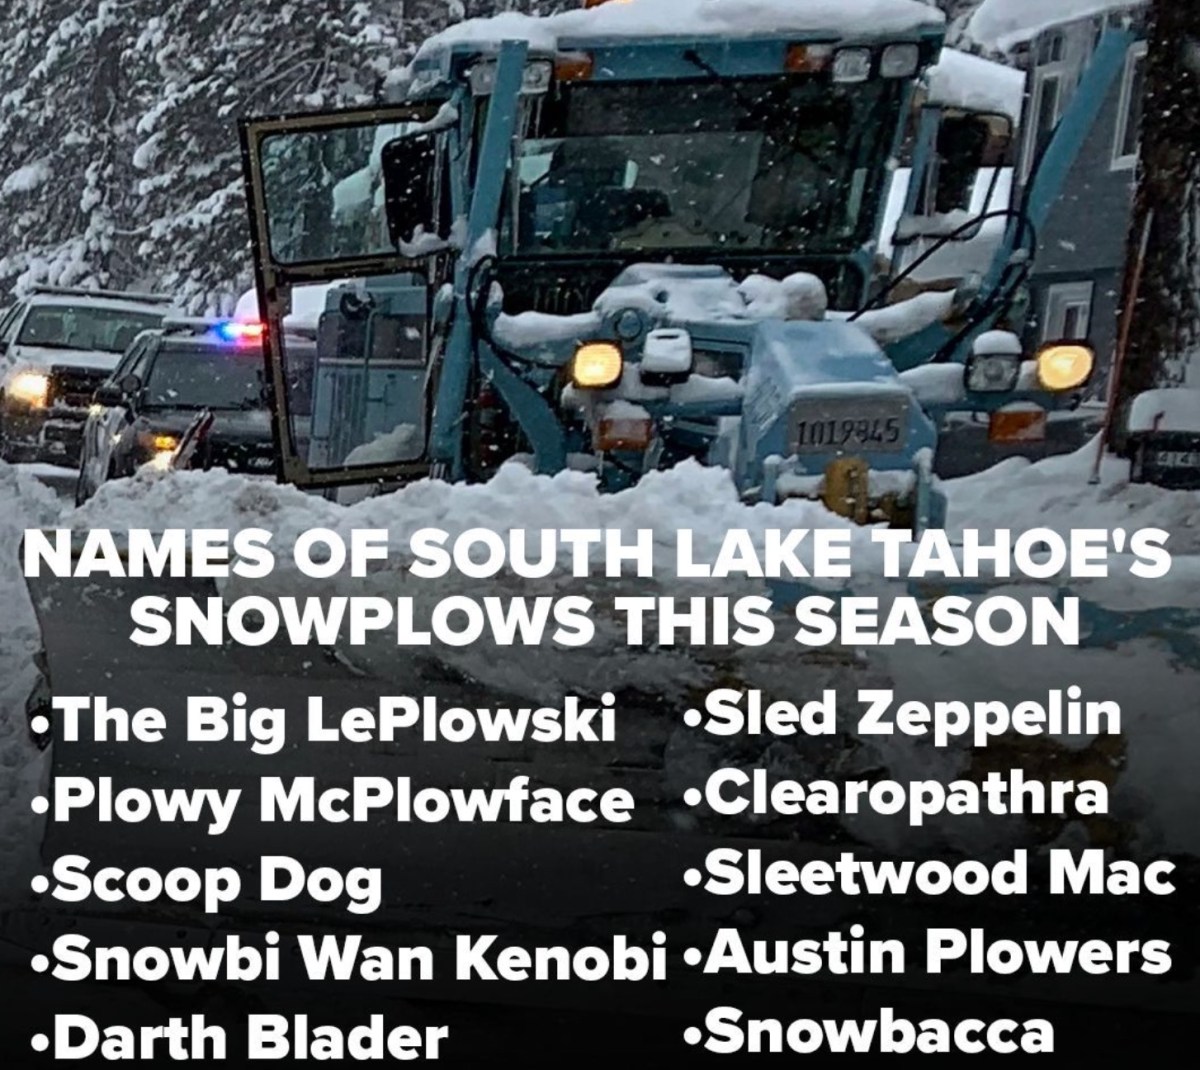 “Sleetwood Mac” South Lake Tahoe Snowplow Naming Contest Winners Revealed